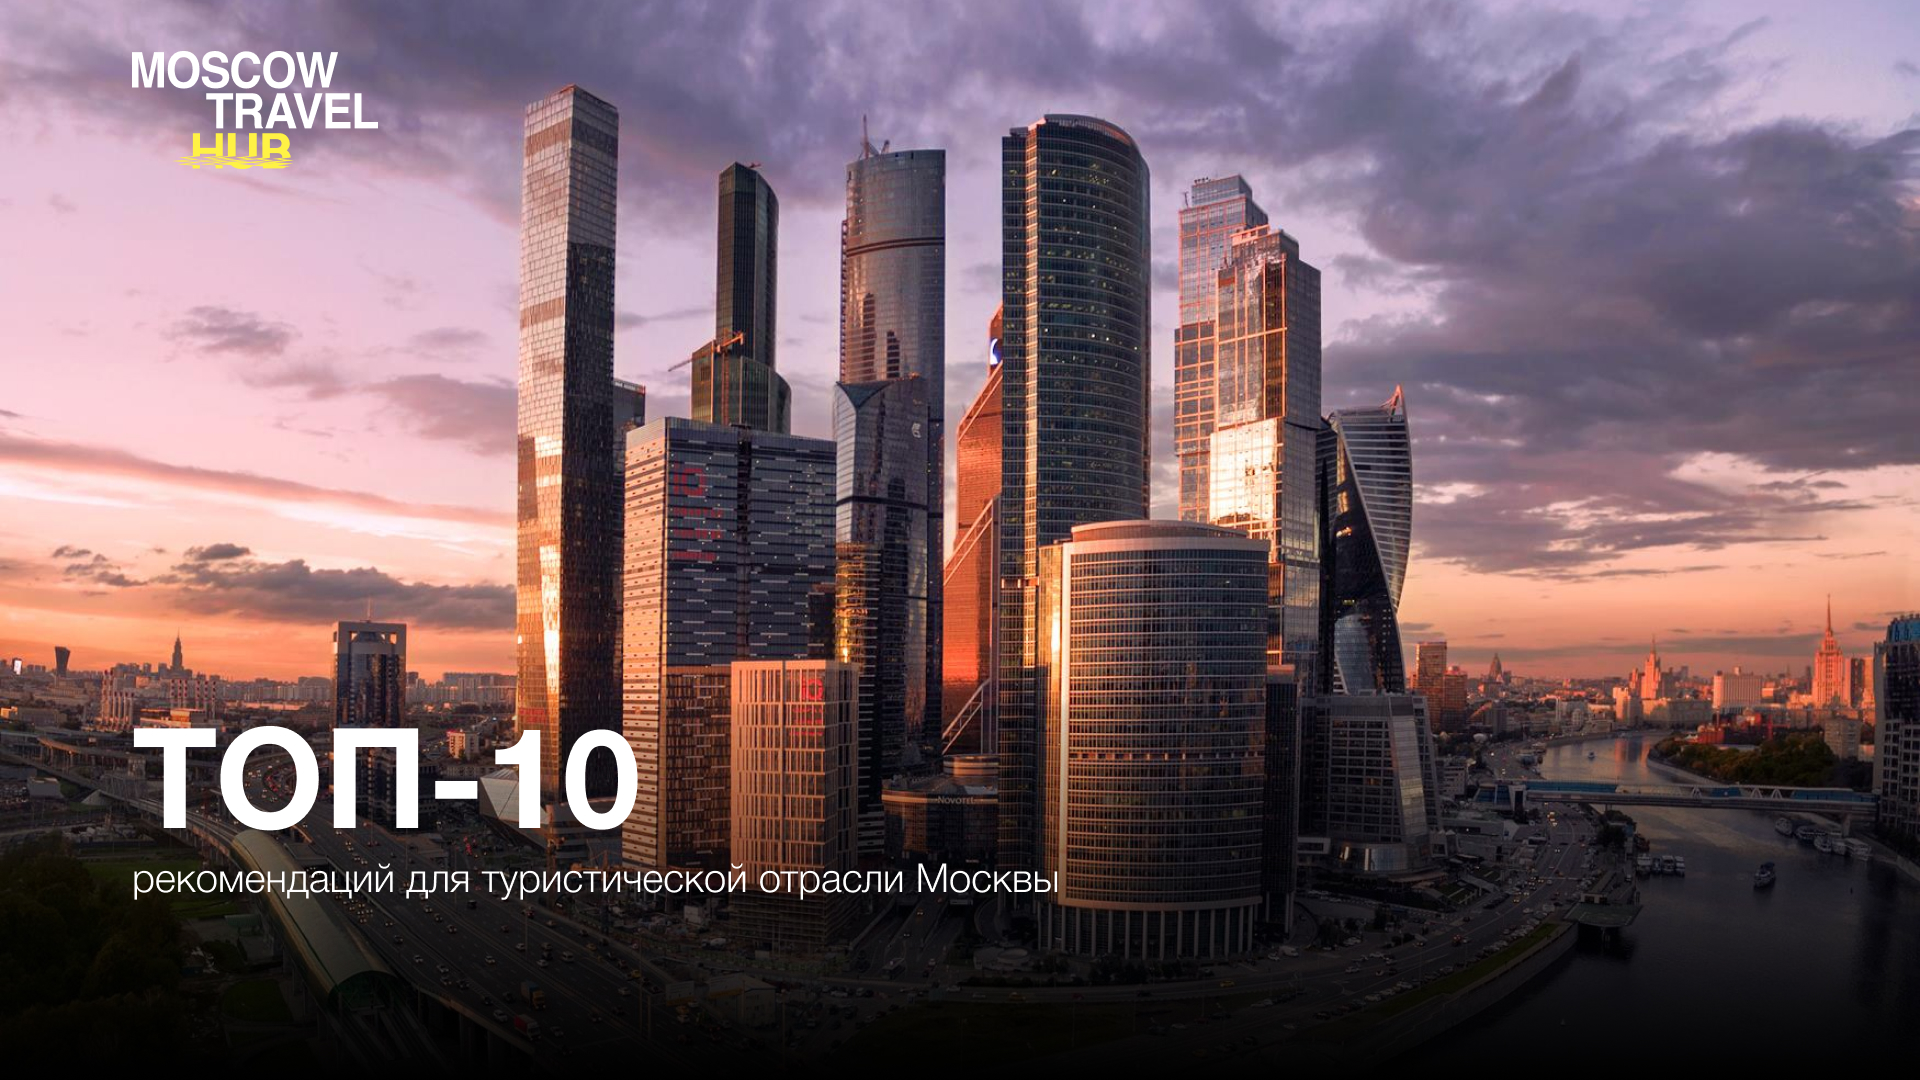 ТОП-10 рекомендаций для туристической отрасли Москвы